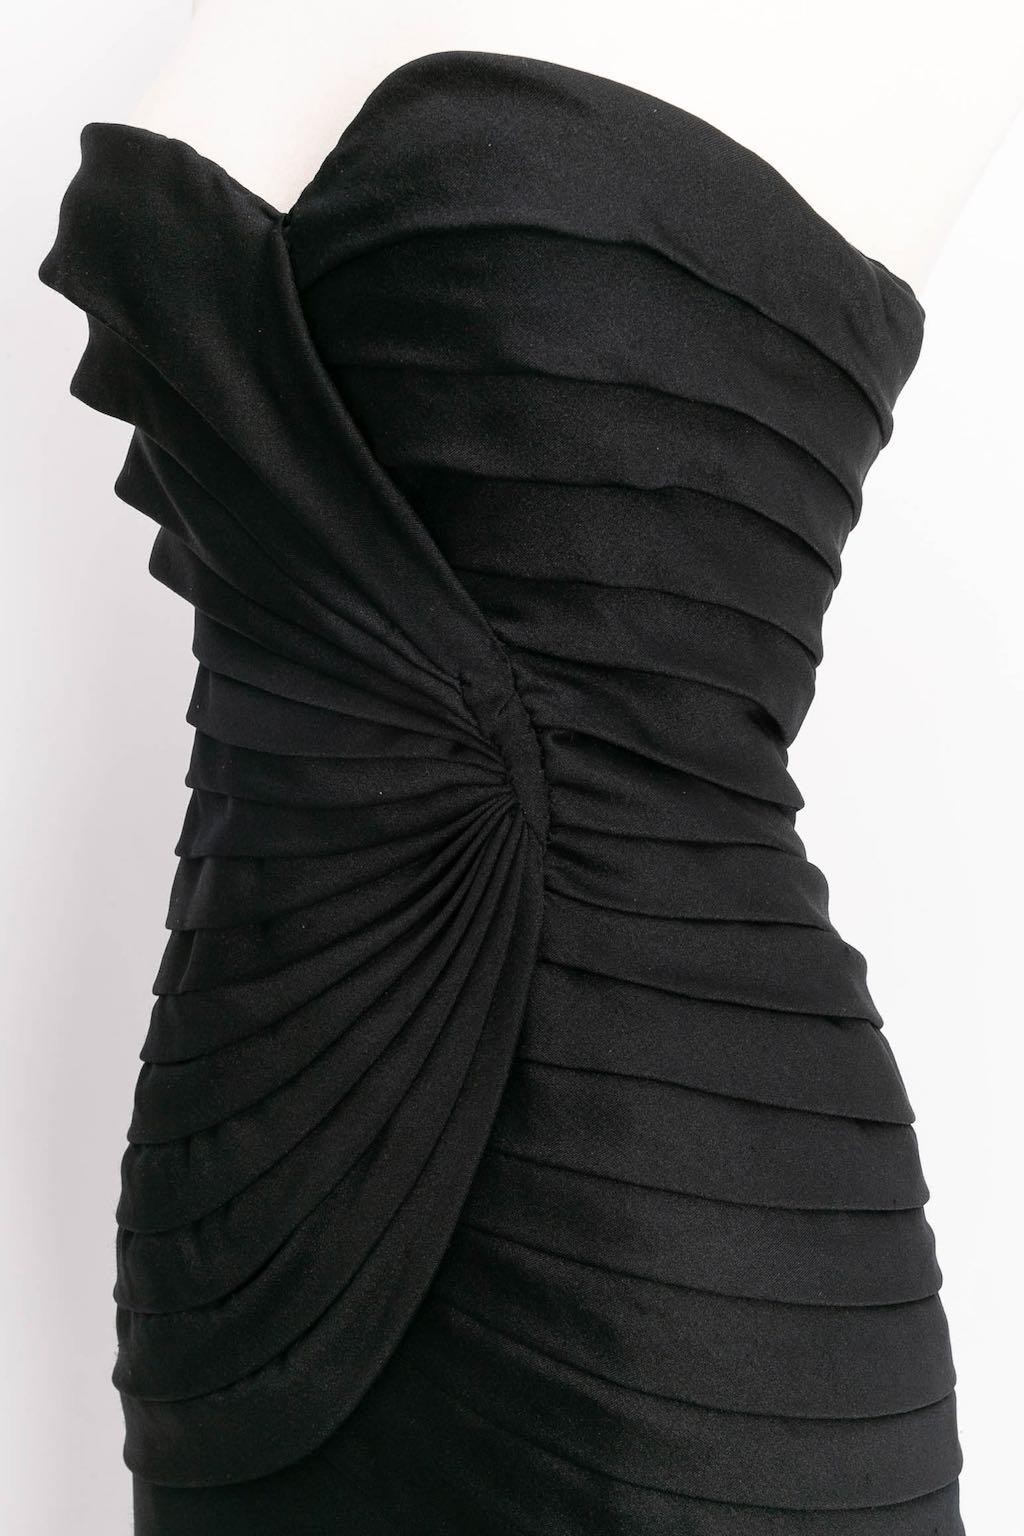 Loris Azzaro bustier Long Silk Jersey Dress, Size 36FR For Sale 1